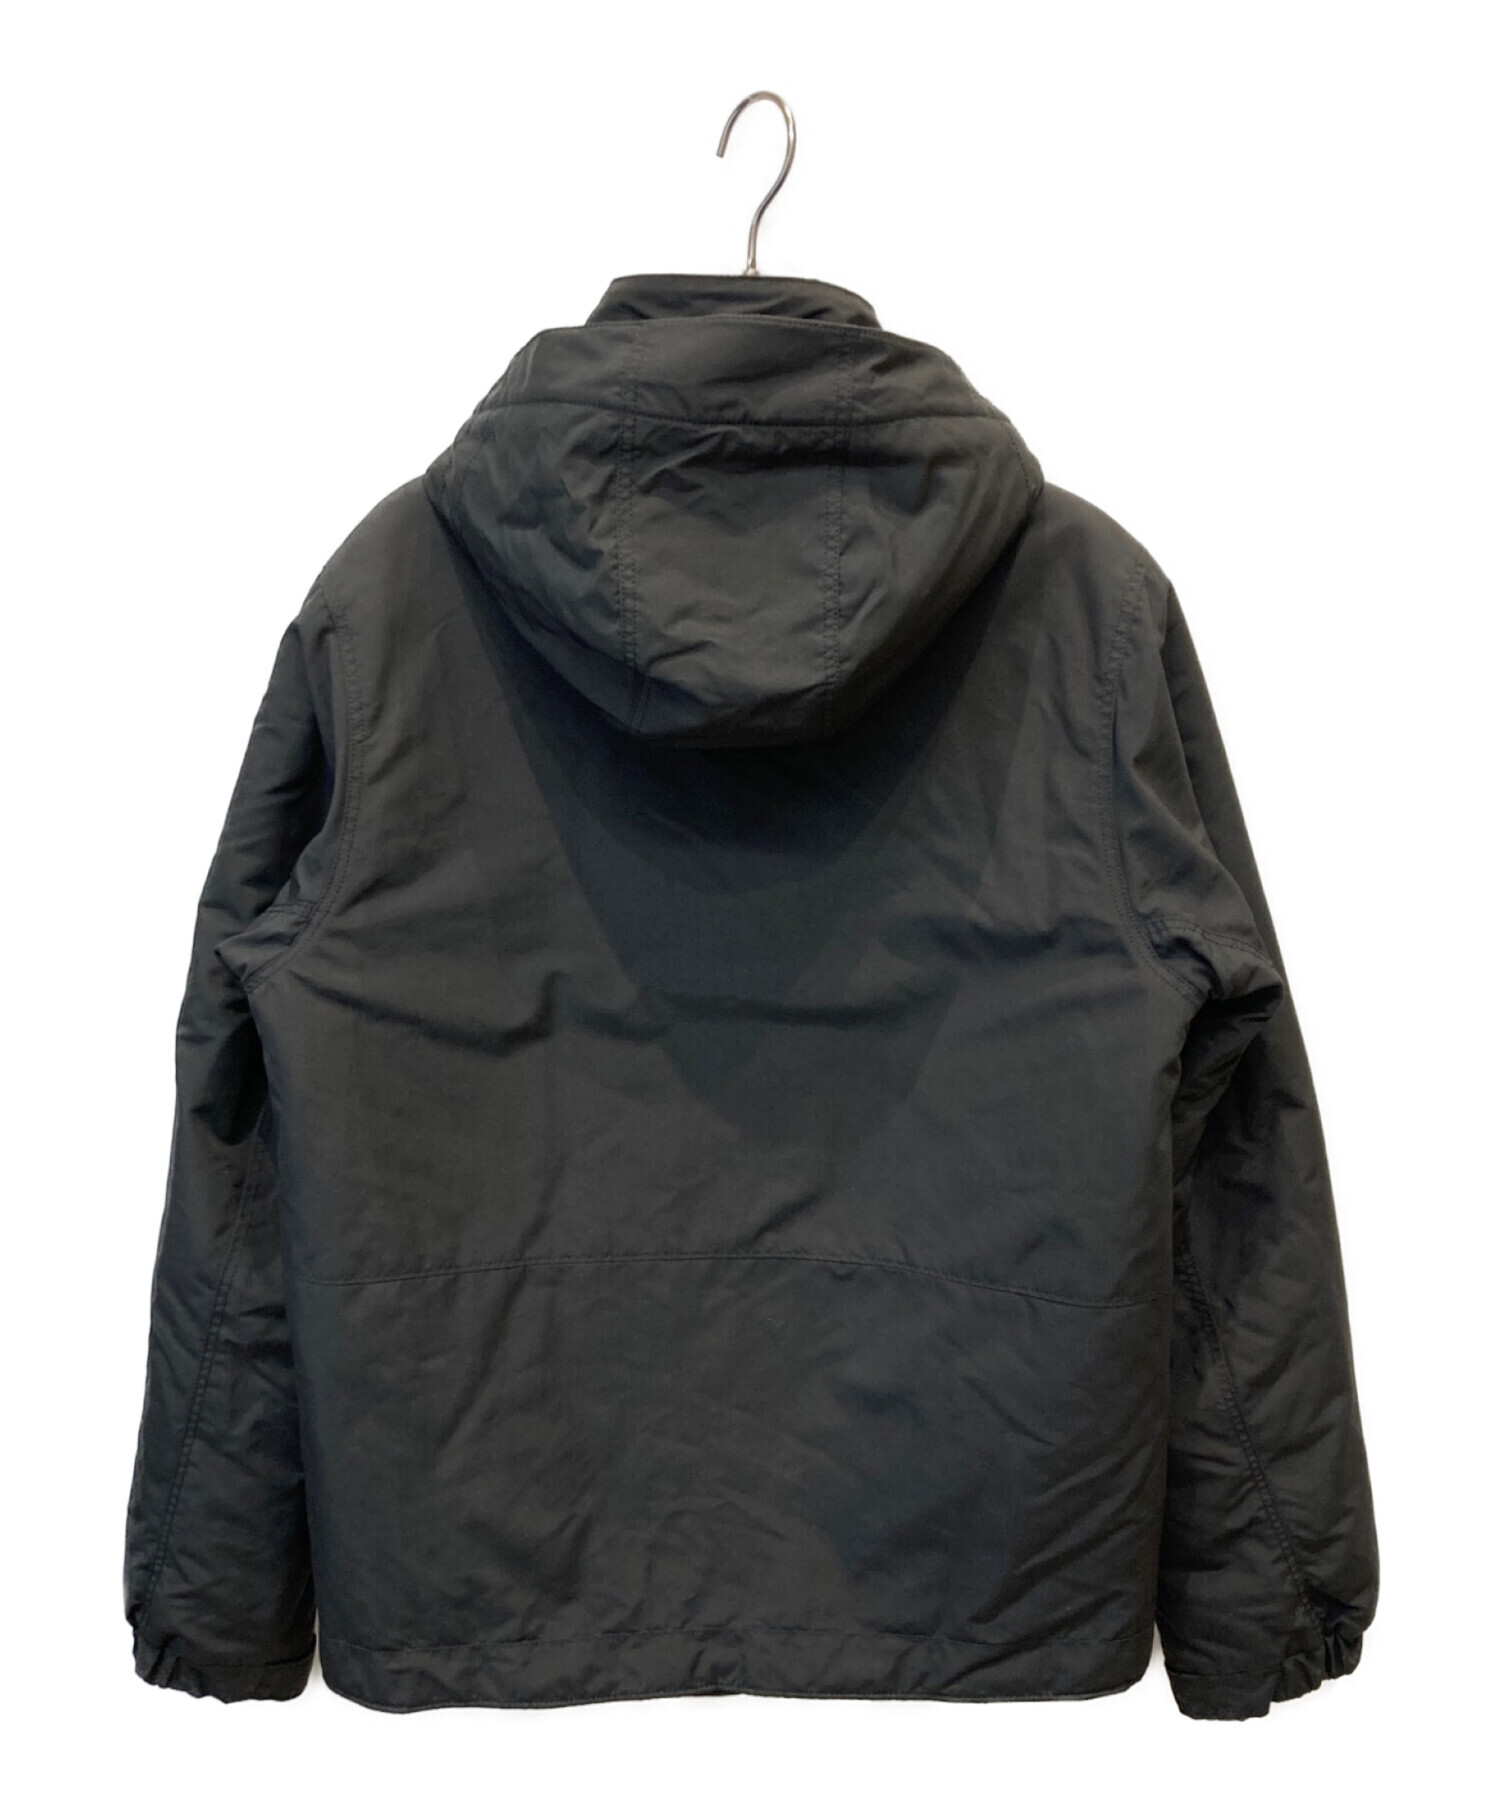 パタゴニア イスマスジャケット ブラック サイズXS - ジャケット